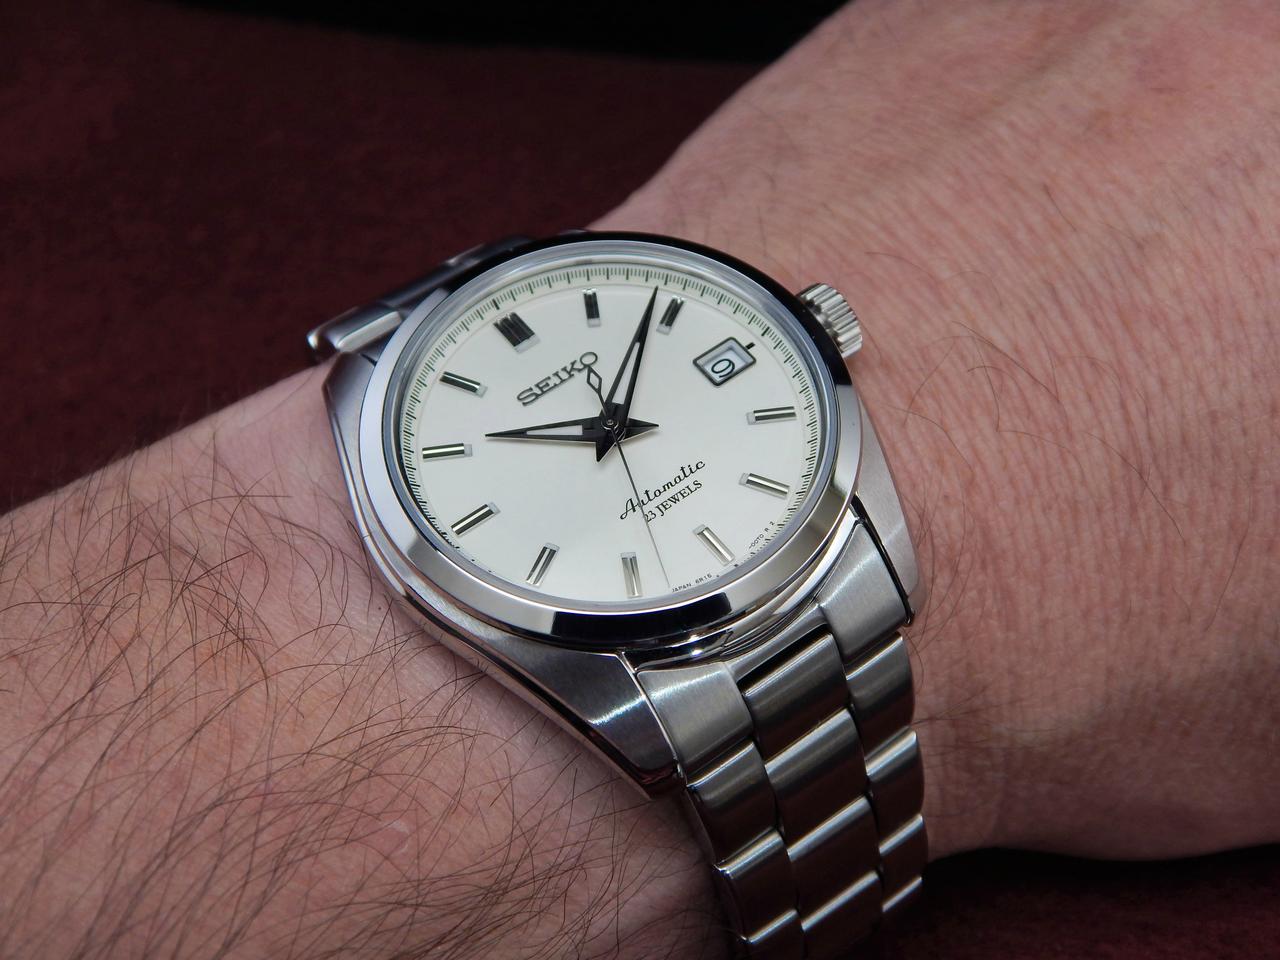 รีวิวข่าวสารวงการนาฬิกาข้อมือผู้ชาย : Seiko SARB035 Mechanical  Automaticนาฬิกาในฝันสำหรับผู้ชายอีกหลายคน